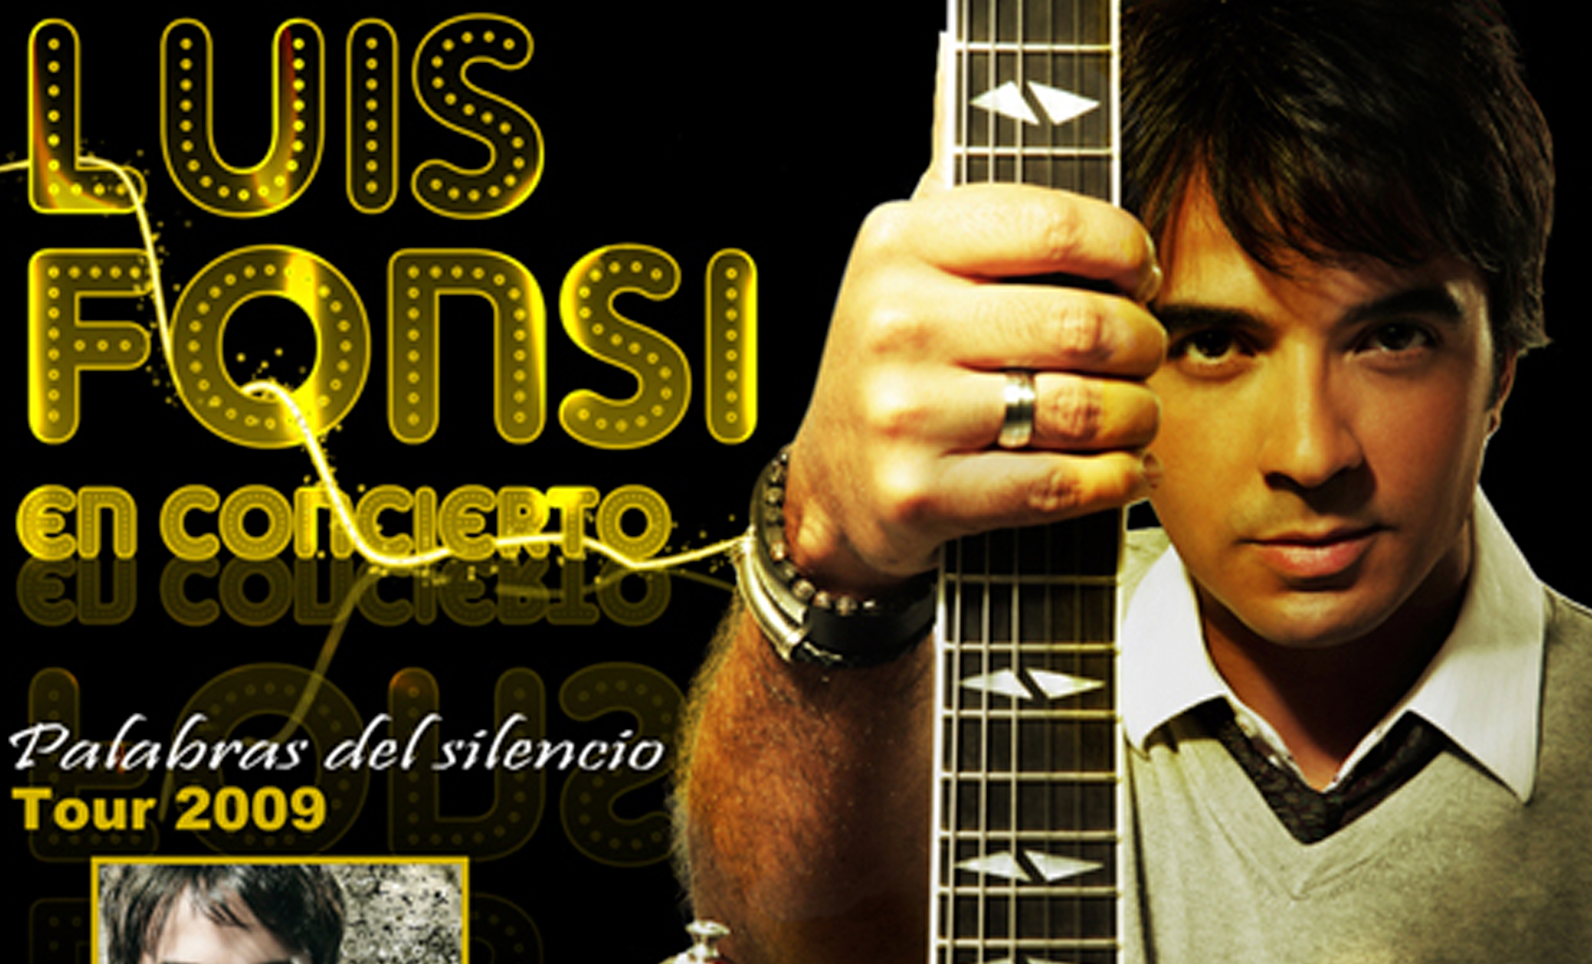 Cartel promocional del concierto de Luis Fonsi en Córdoba.